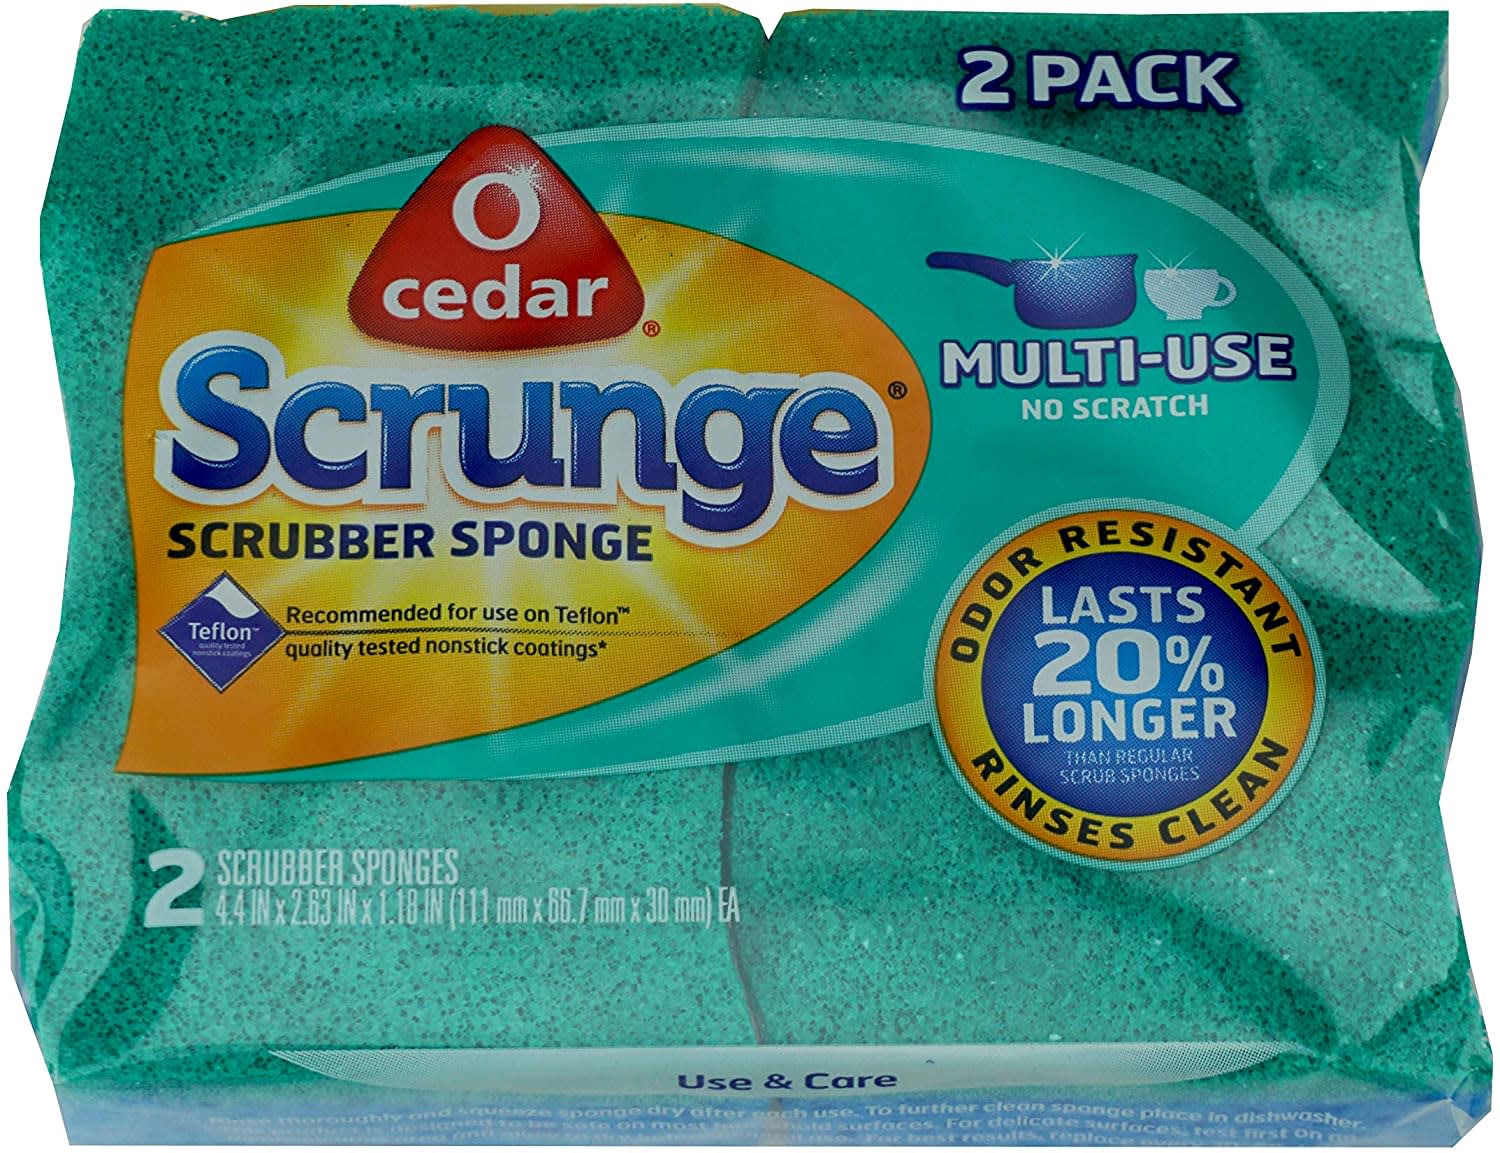 30 Pack Dish Sponge for Kitchen, Scrub Cleaning Sponge, Sponges